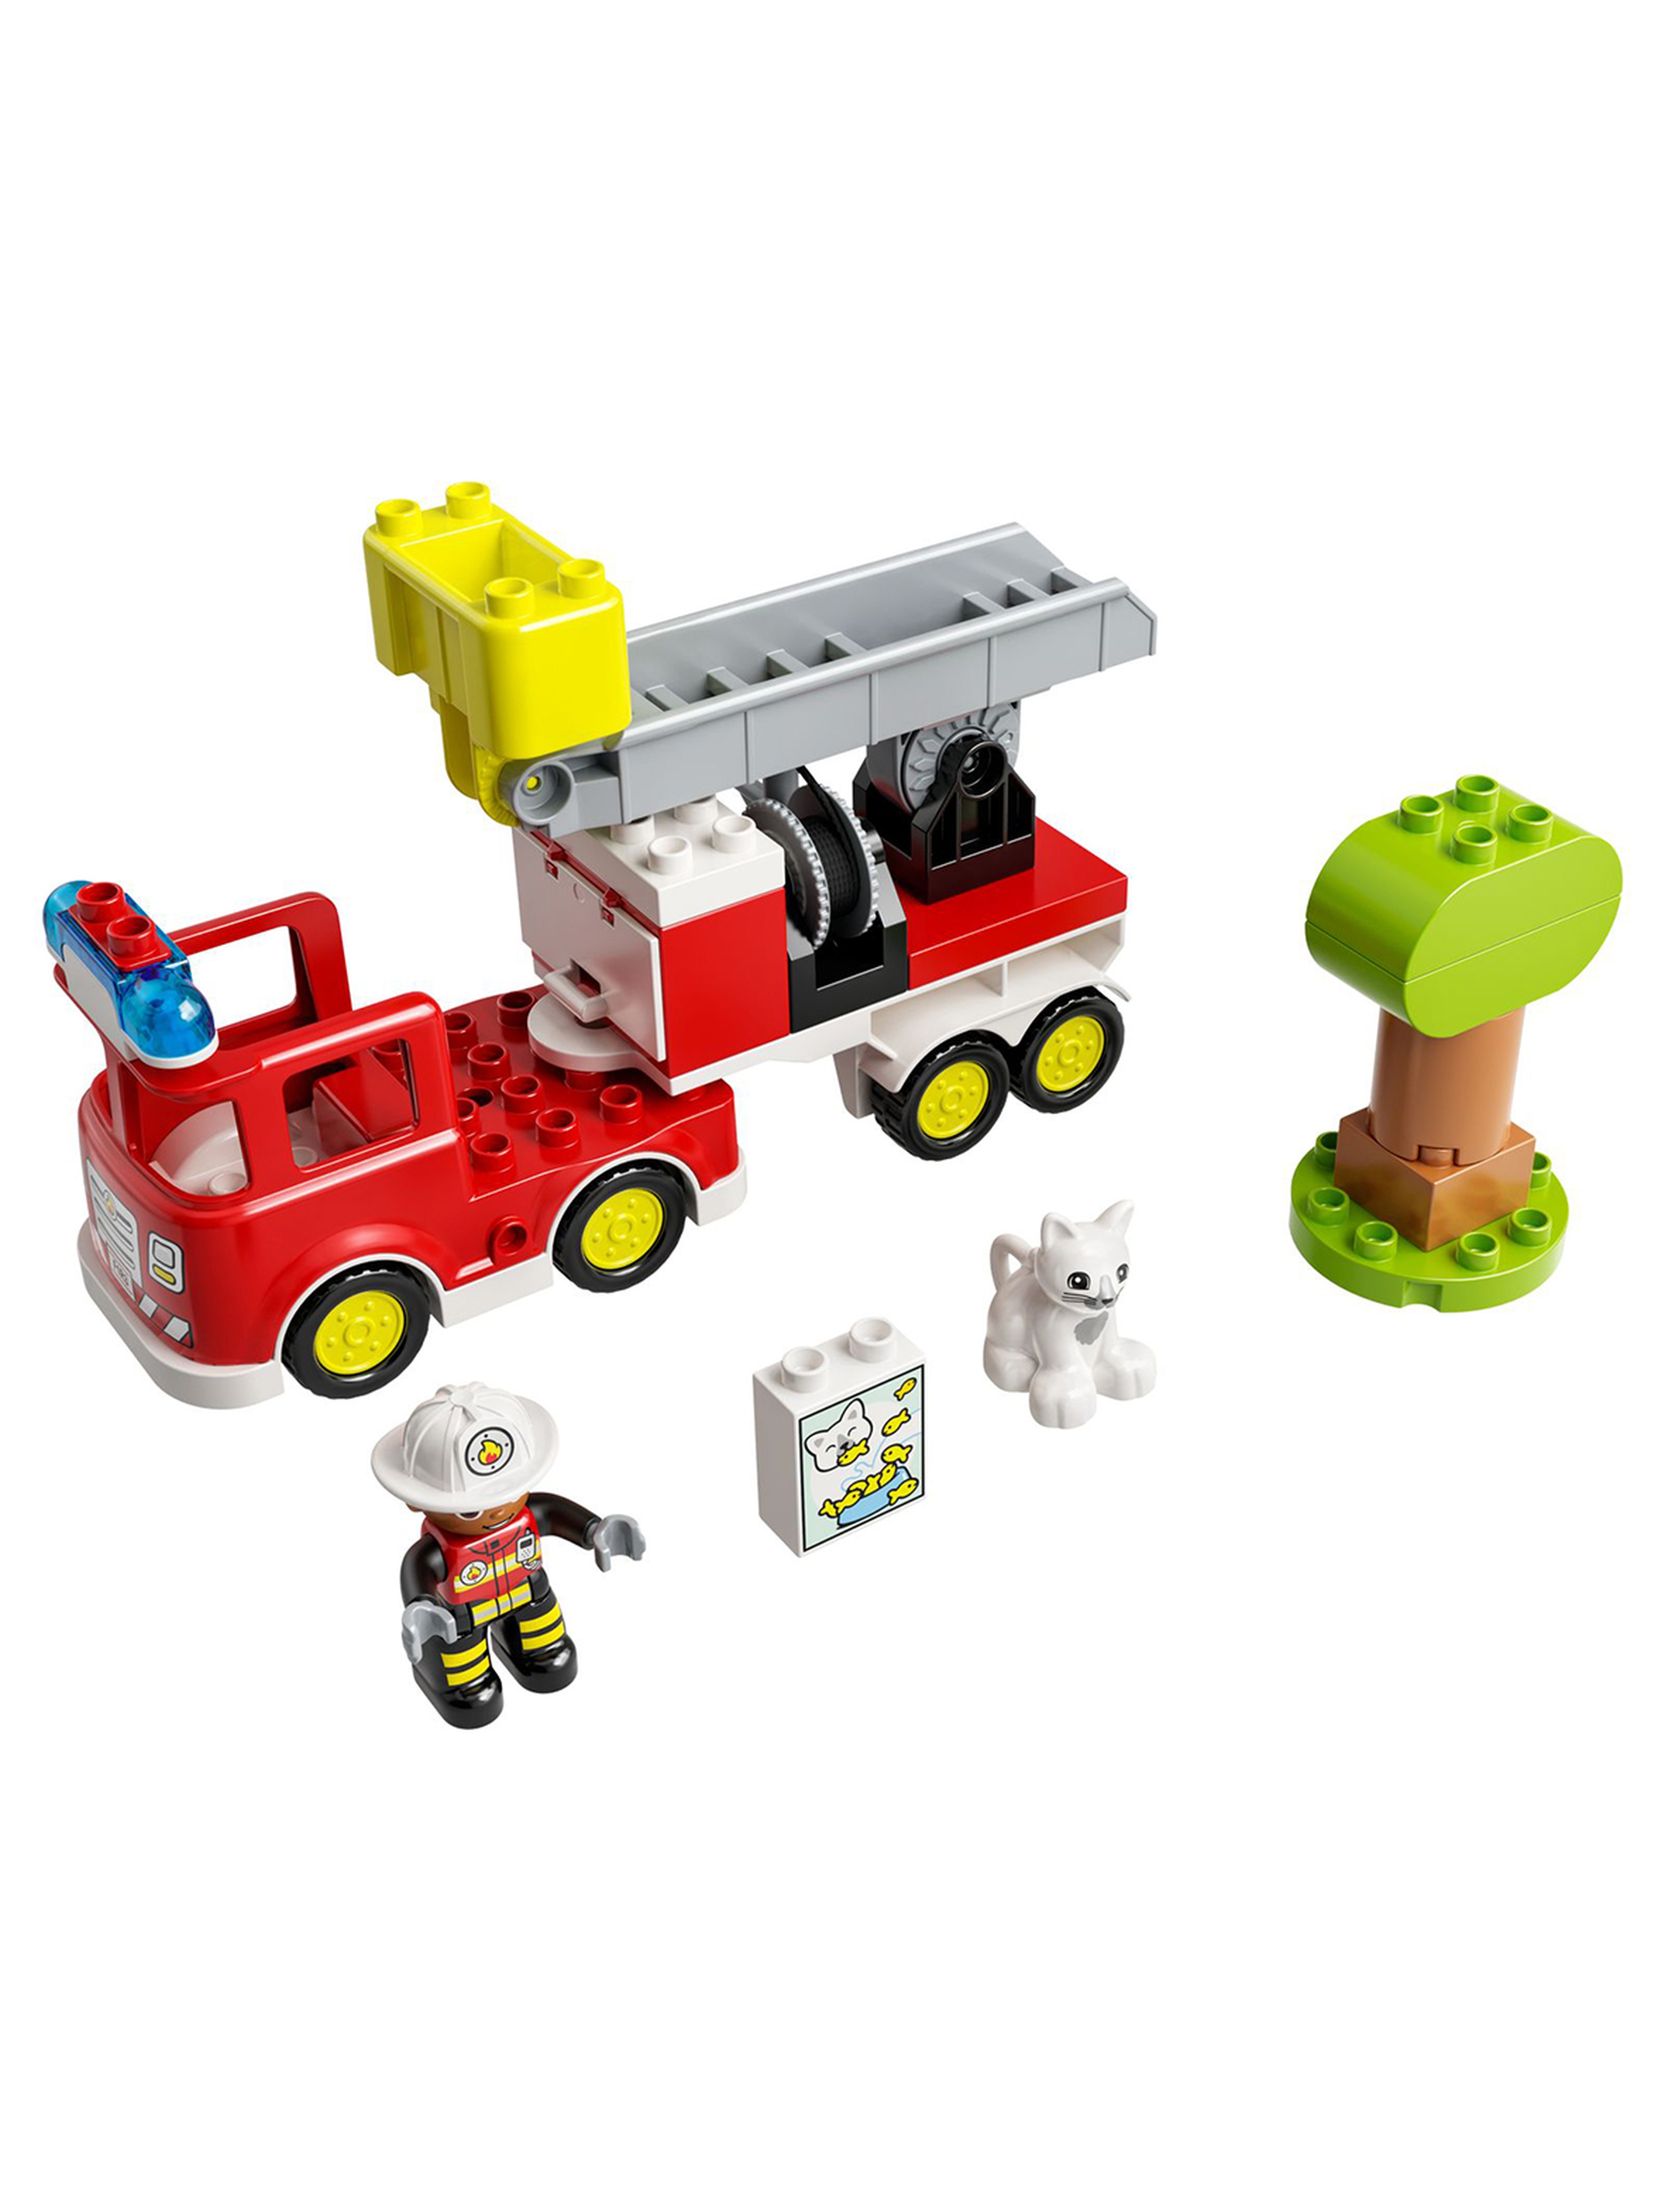 LEGO DUPLO - Wóz strażacki 10969 - 21 elementów, wiek 2+